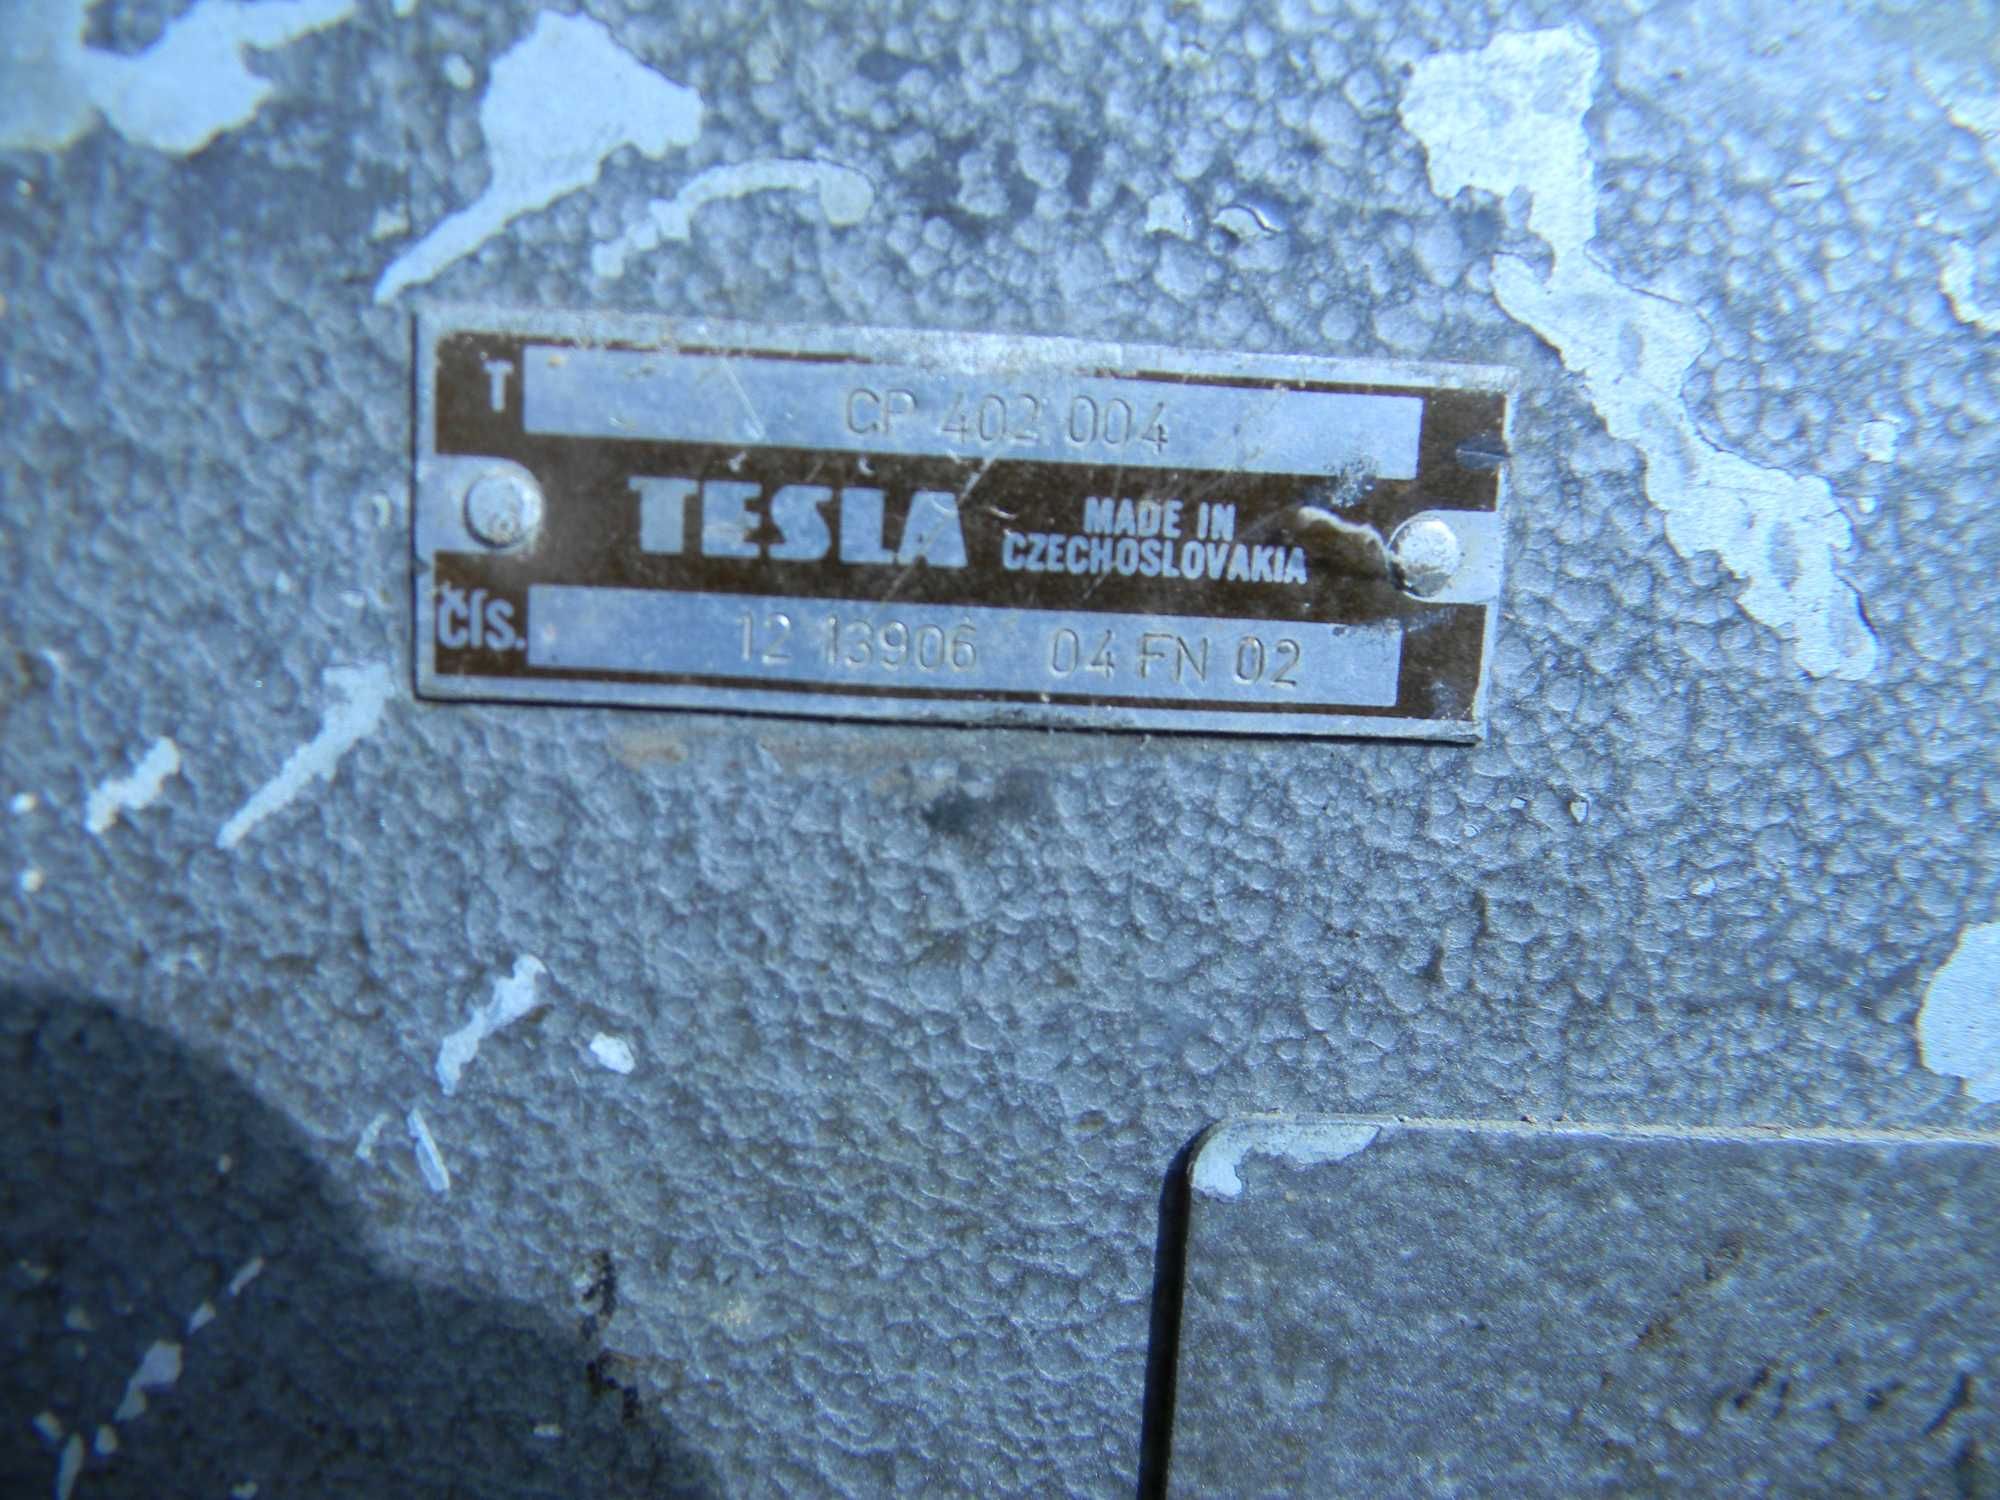 Апарат службового зв'язку SLS Tesla